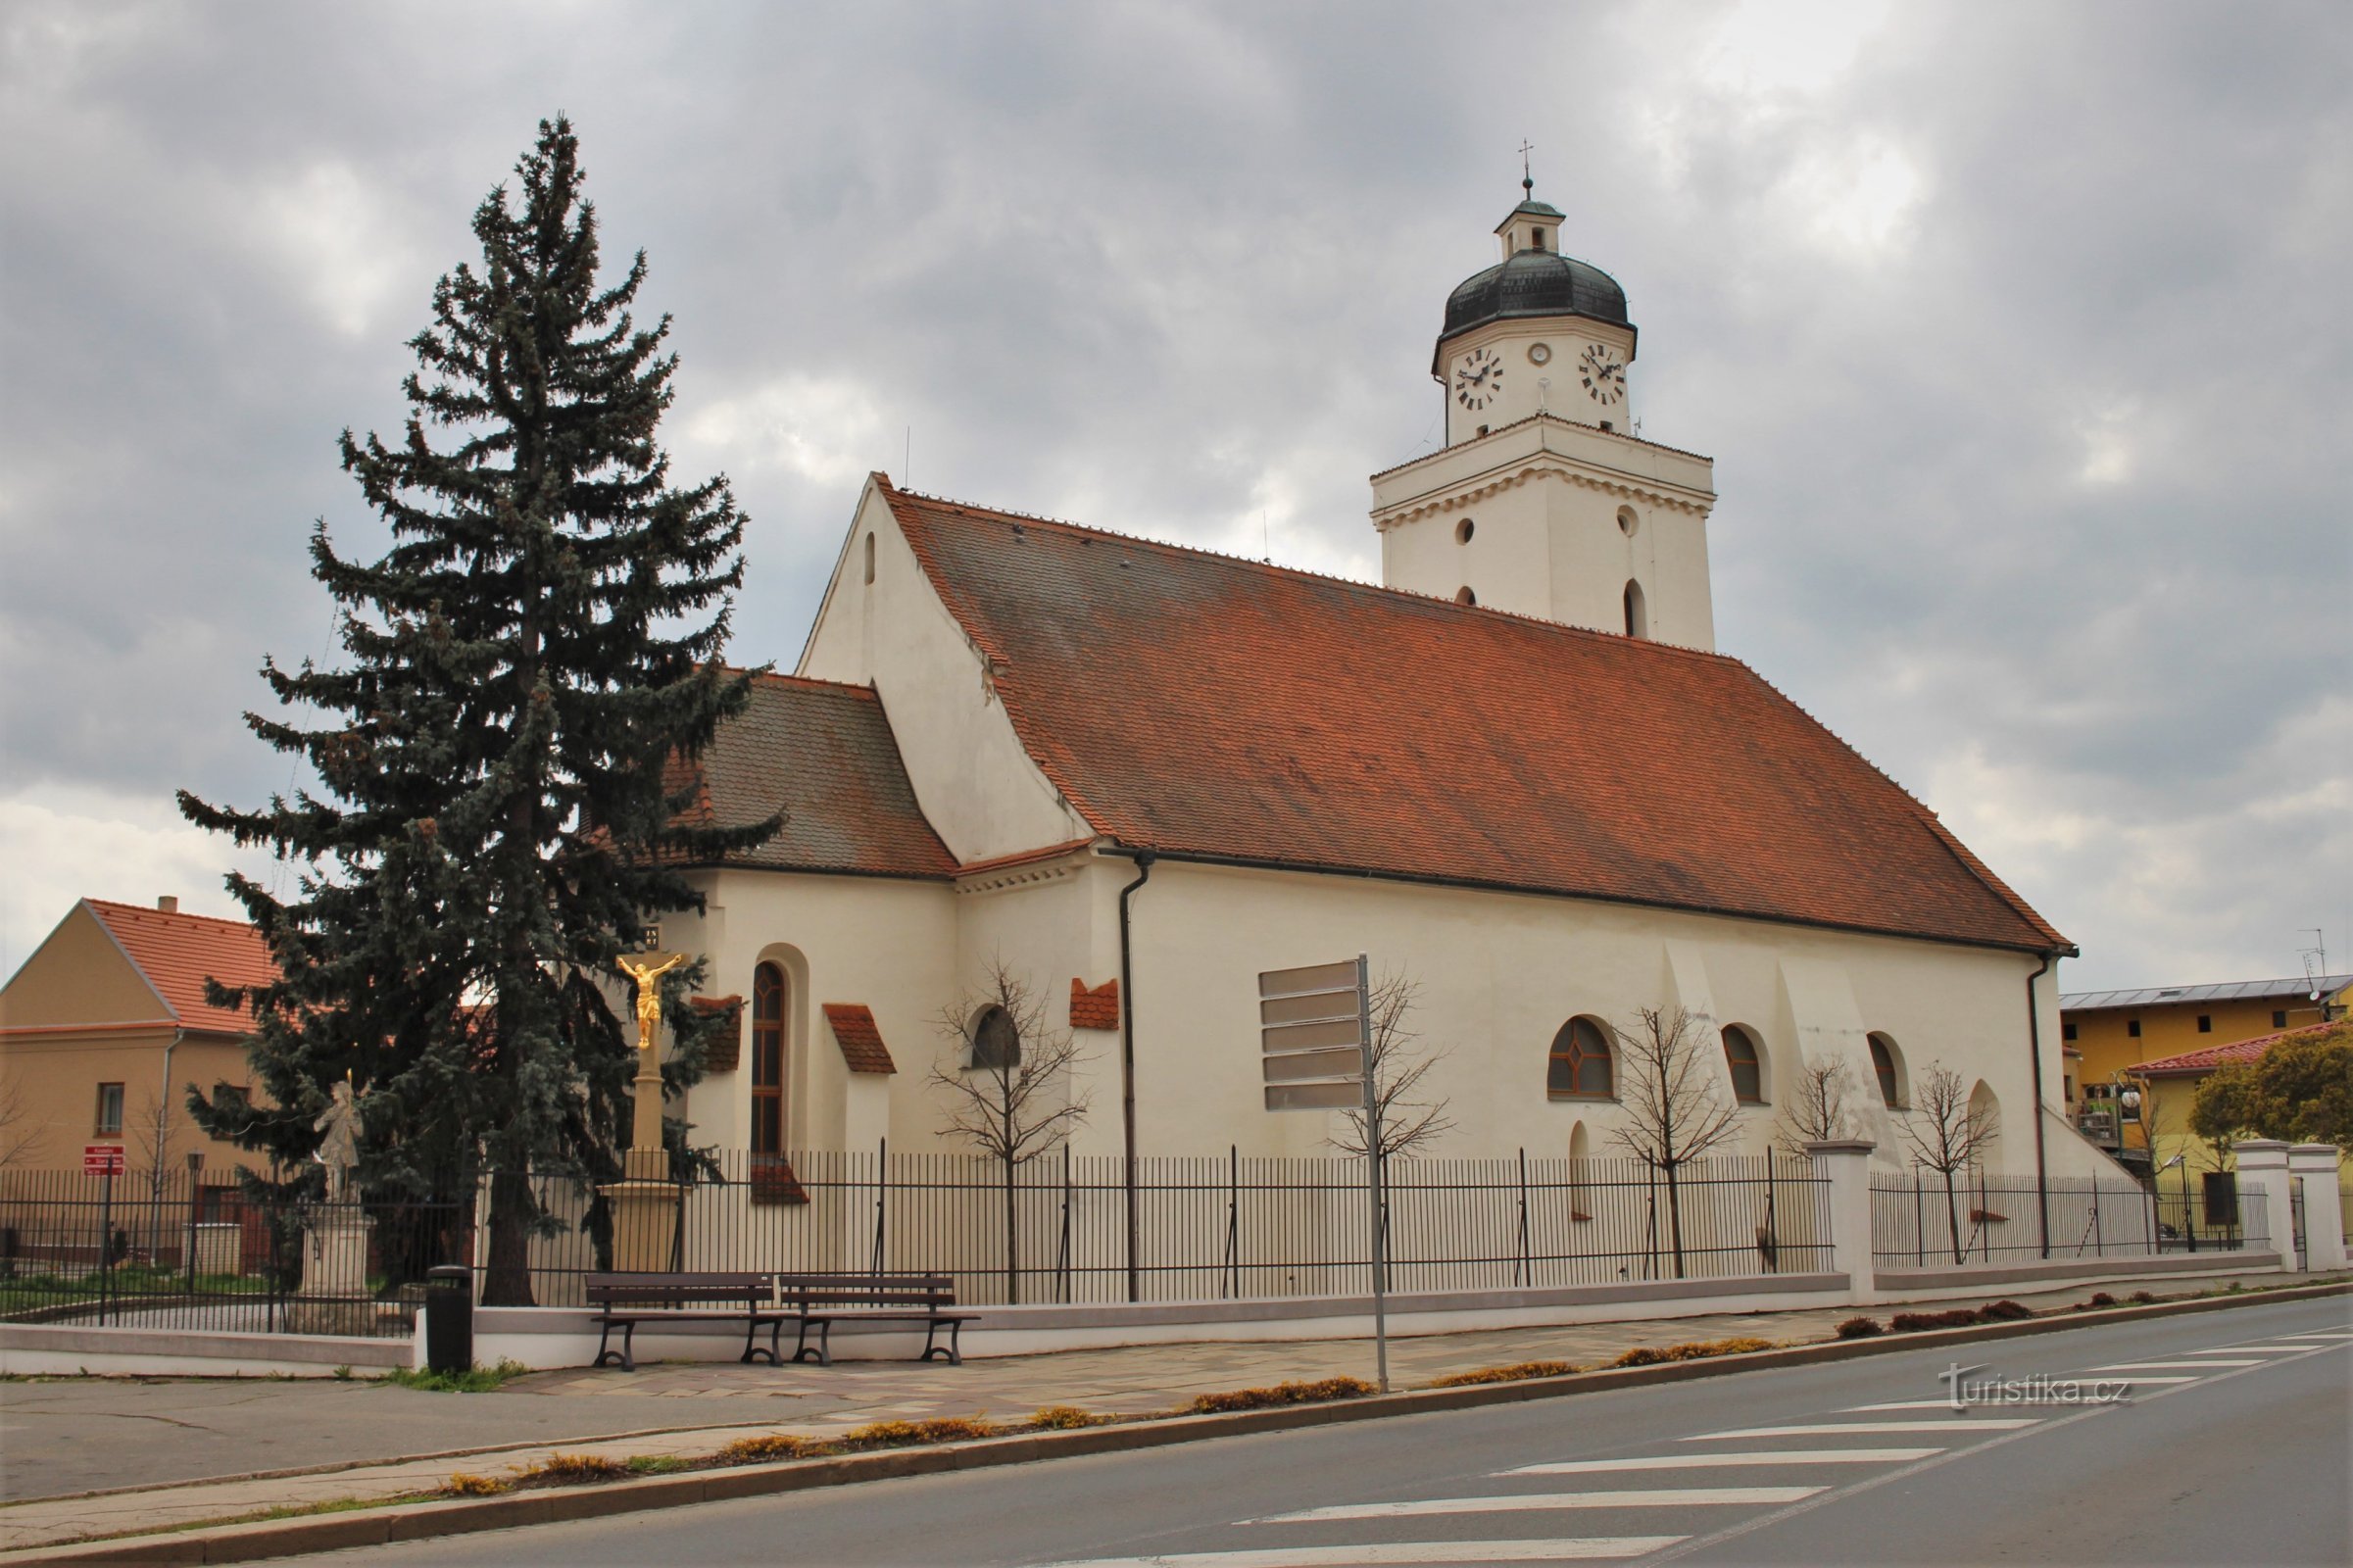 W rdzeniu romański kościół św. Jakub Starszy